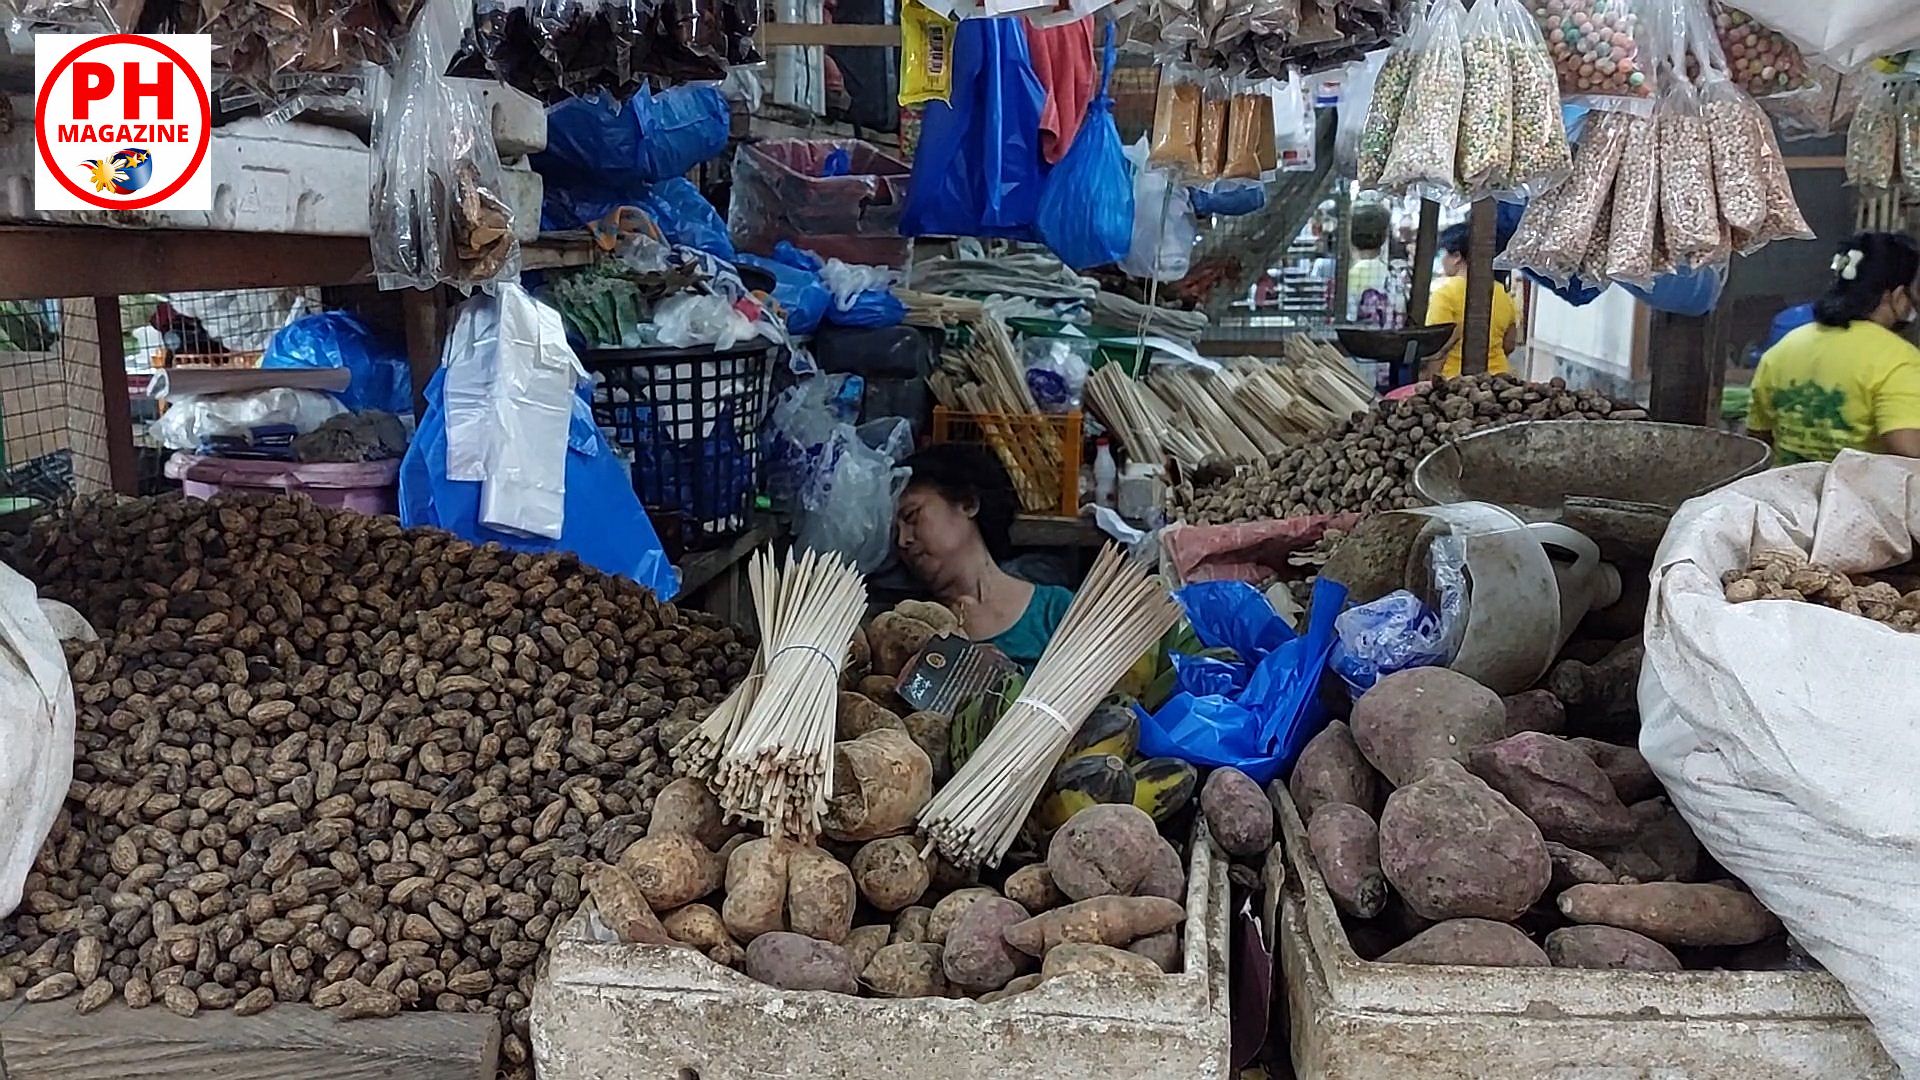 PHILIPPINEN BLOG - Erdnüsse vom Markt